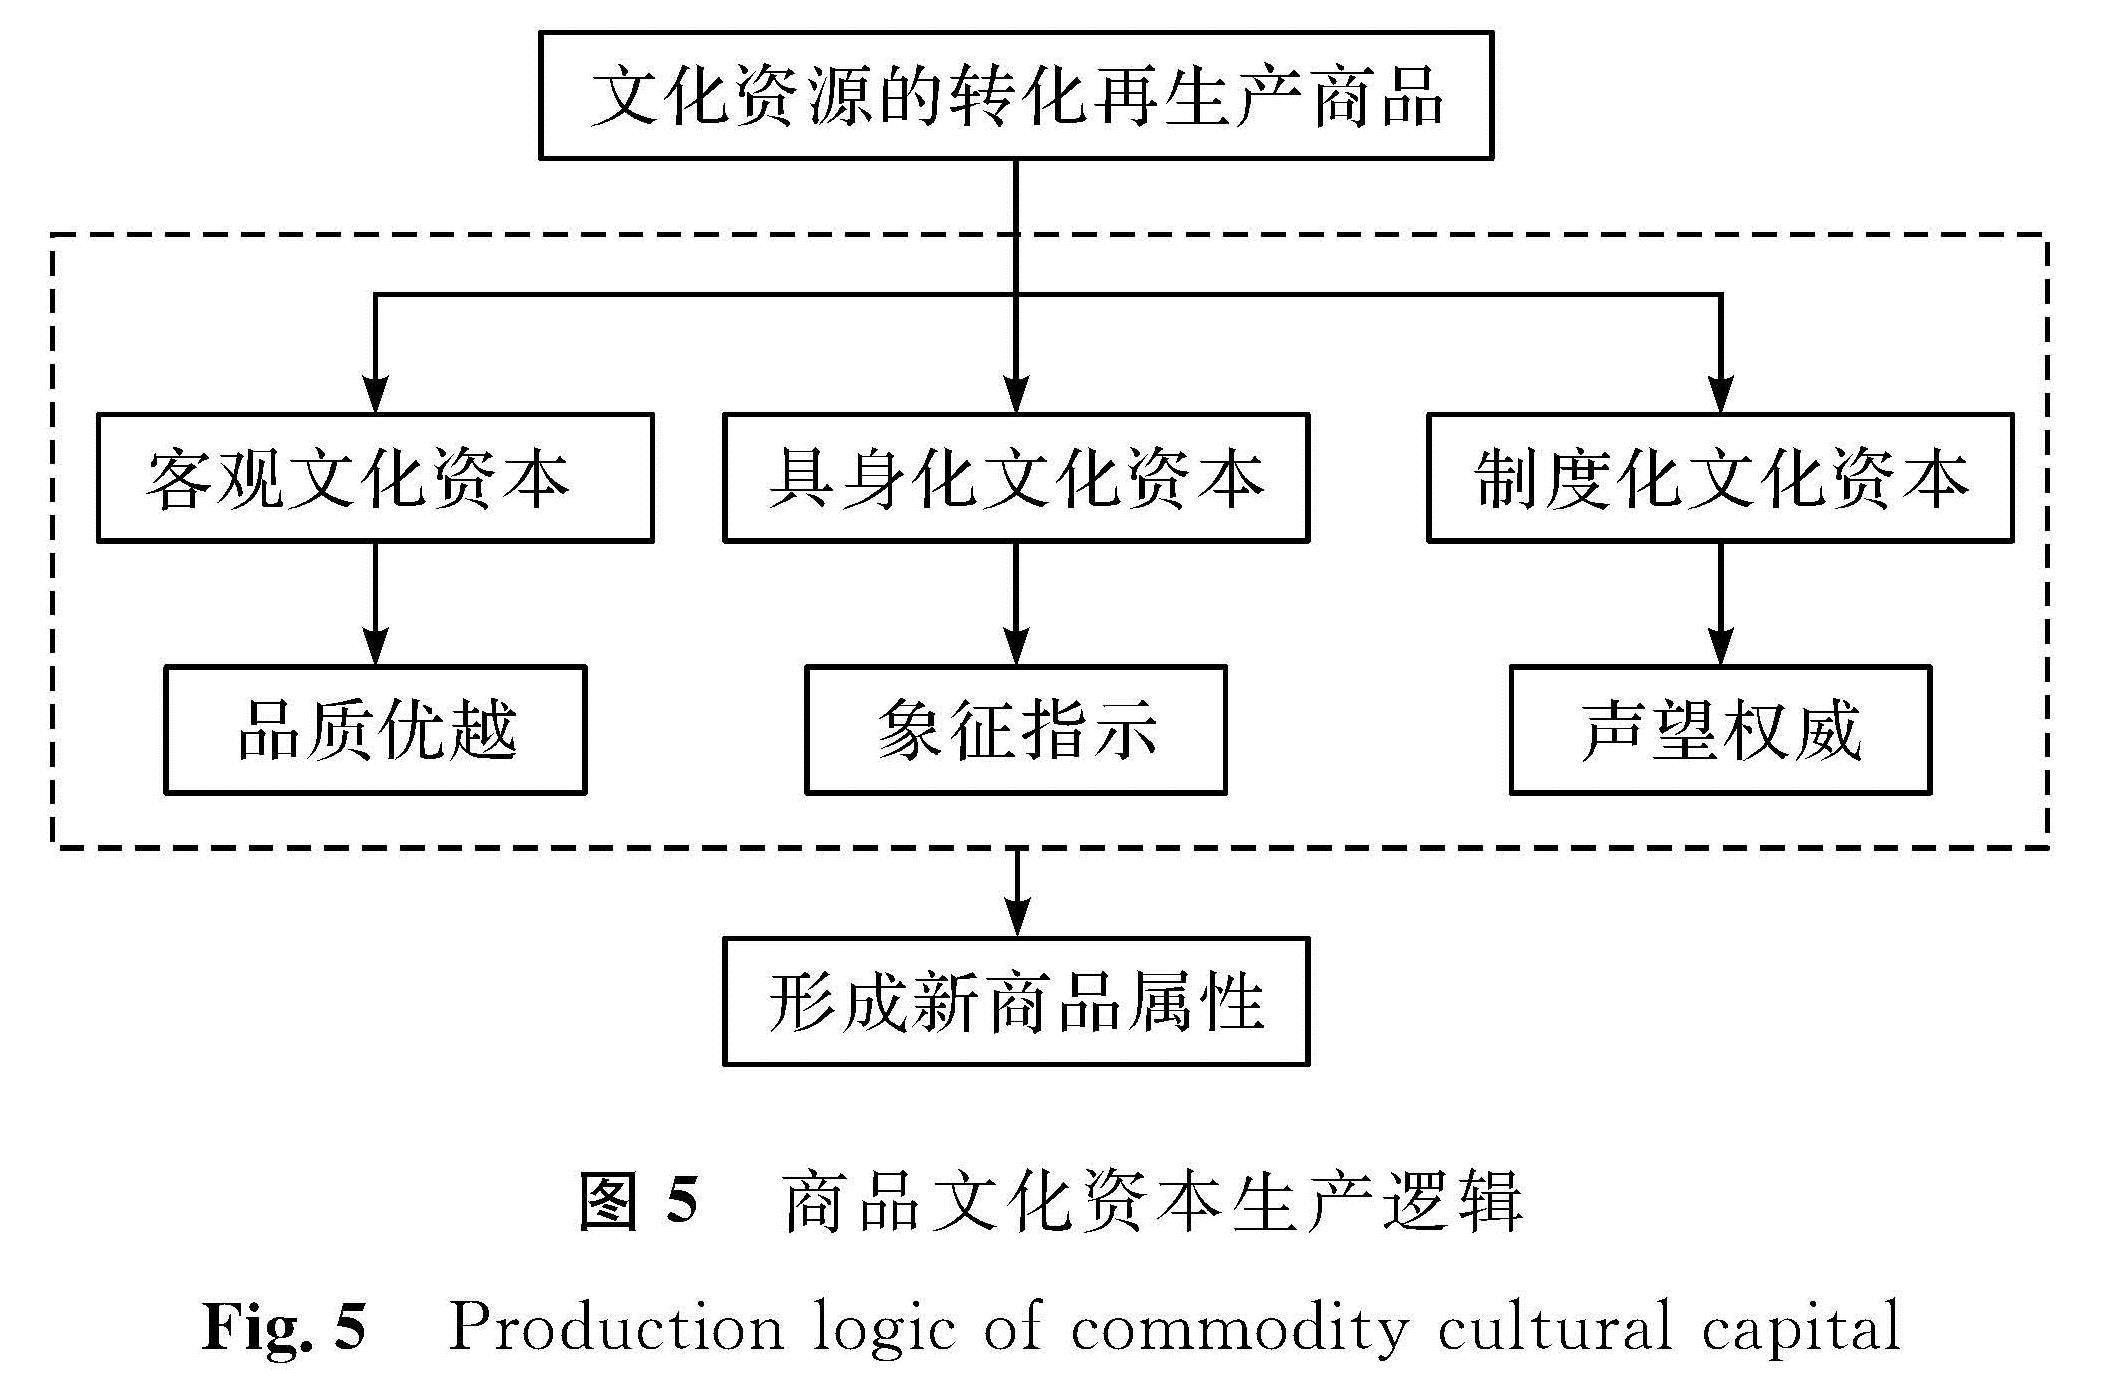 图5 商品文化资本生产逻辑<br/>Fig.5 Production logic of commodity cultural capital